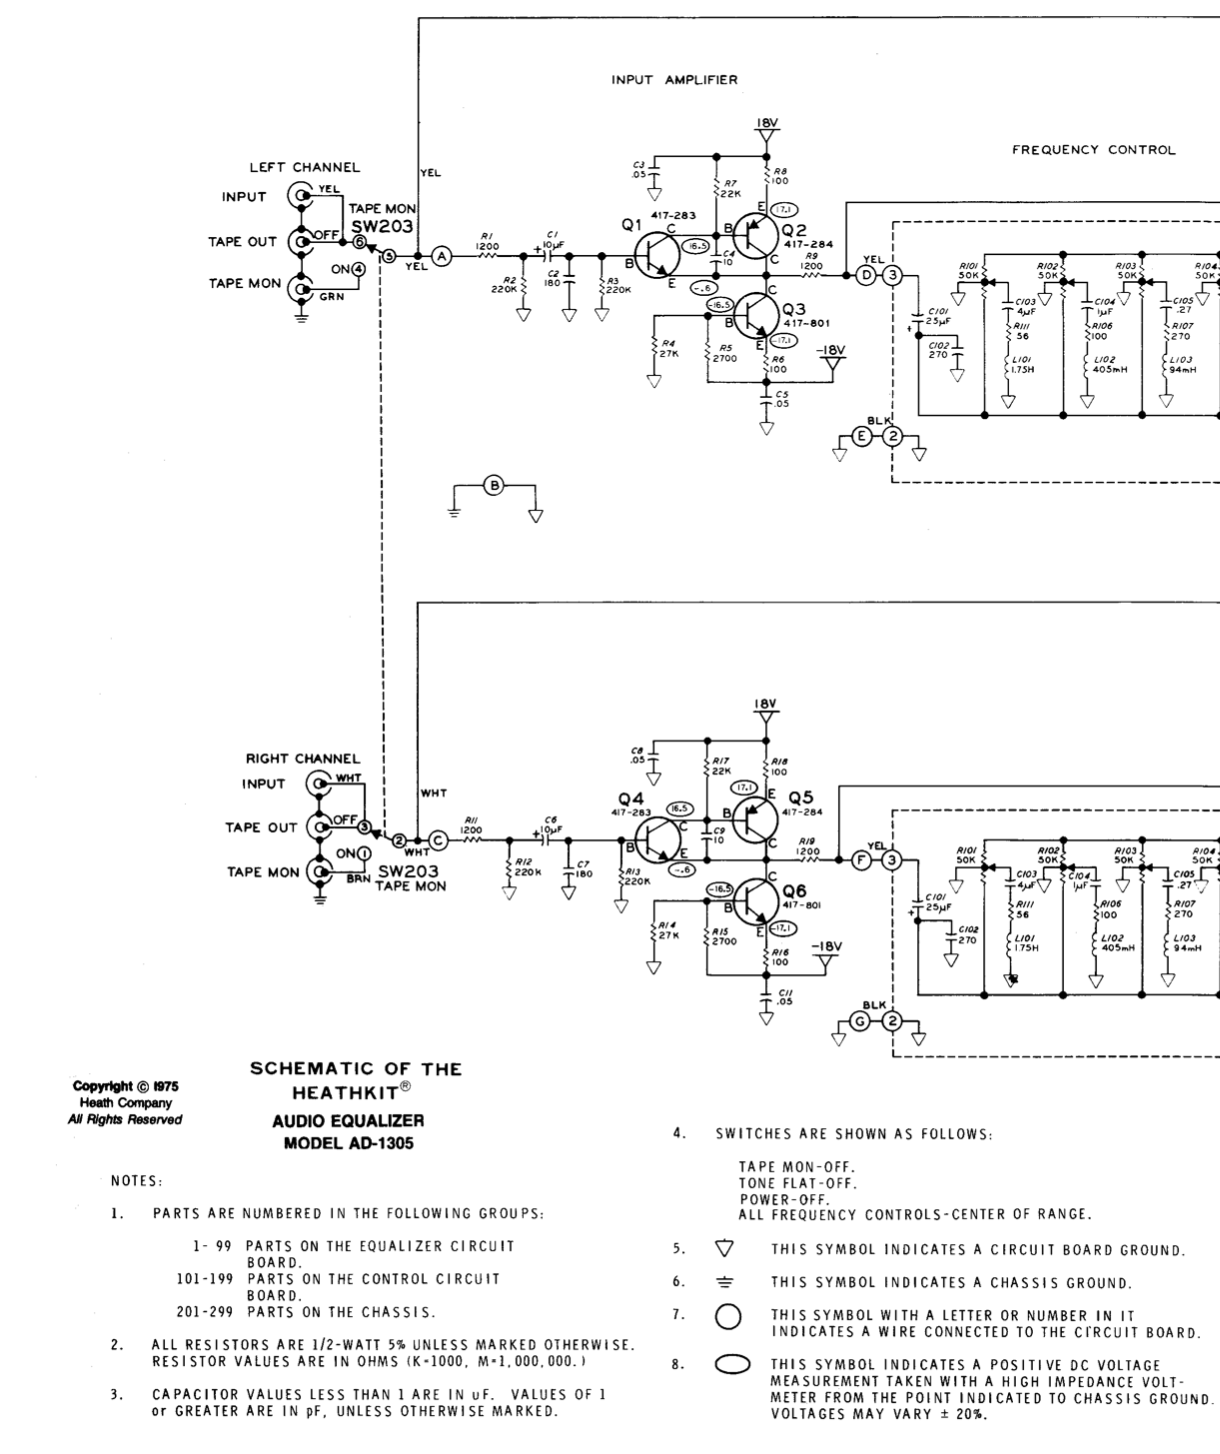 Heathkit AD-1305 Audio Equalizer - Schematic Diagrams